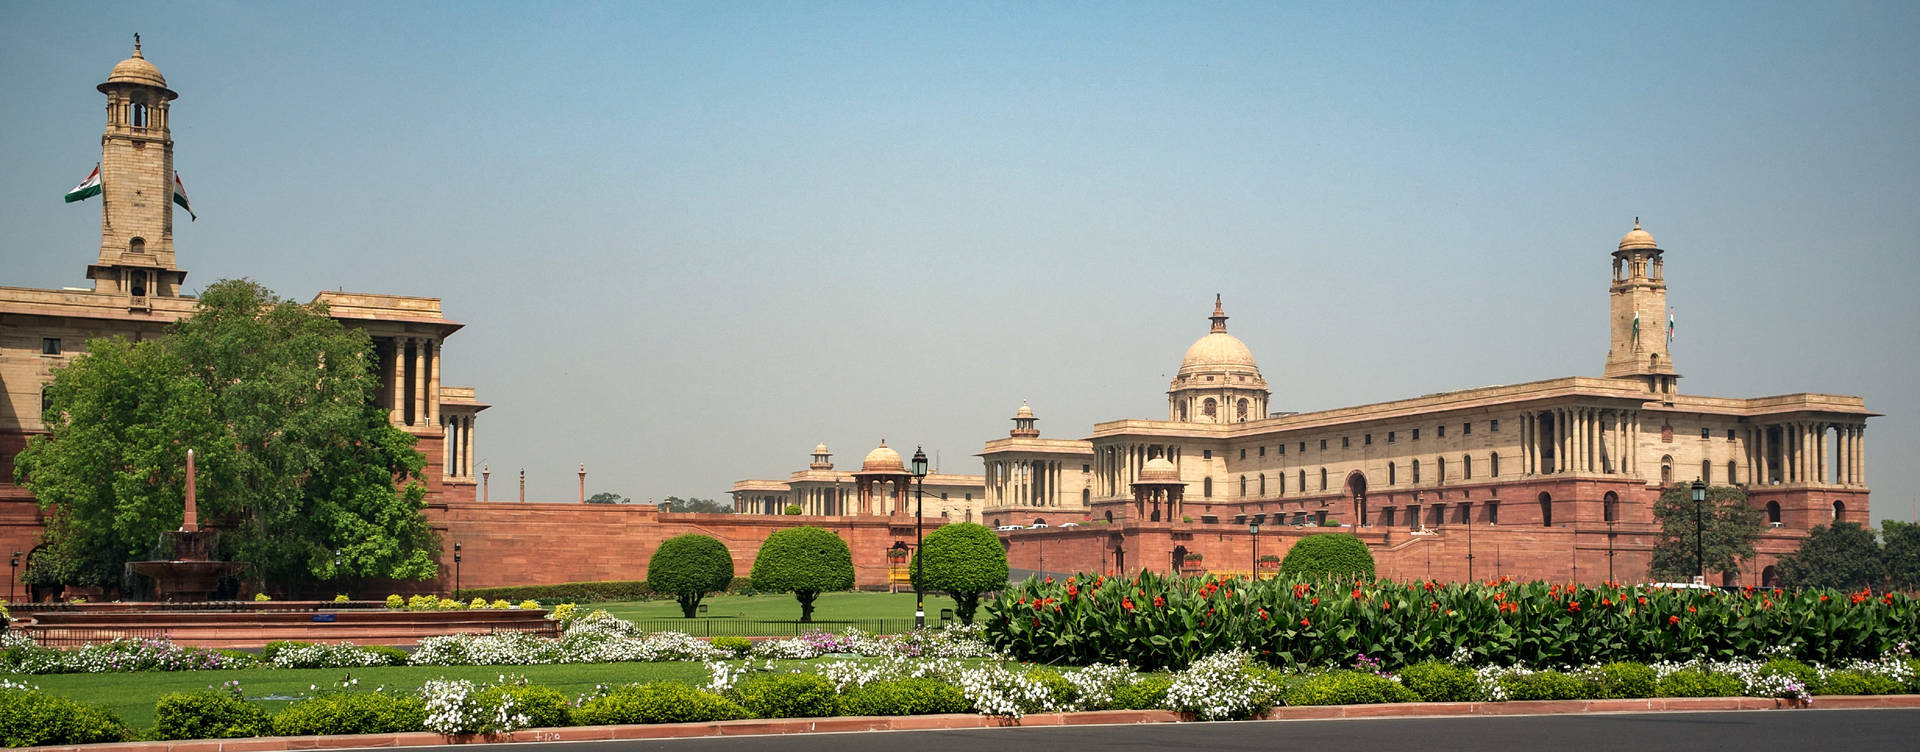 Delhi Government Raisina Hill